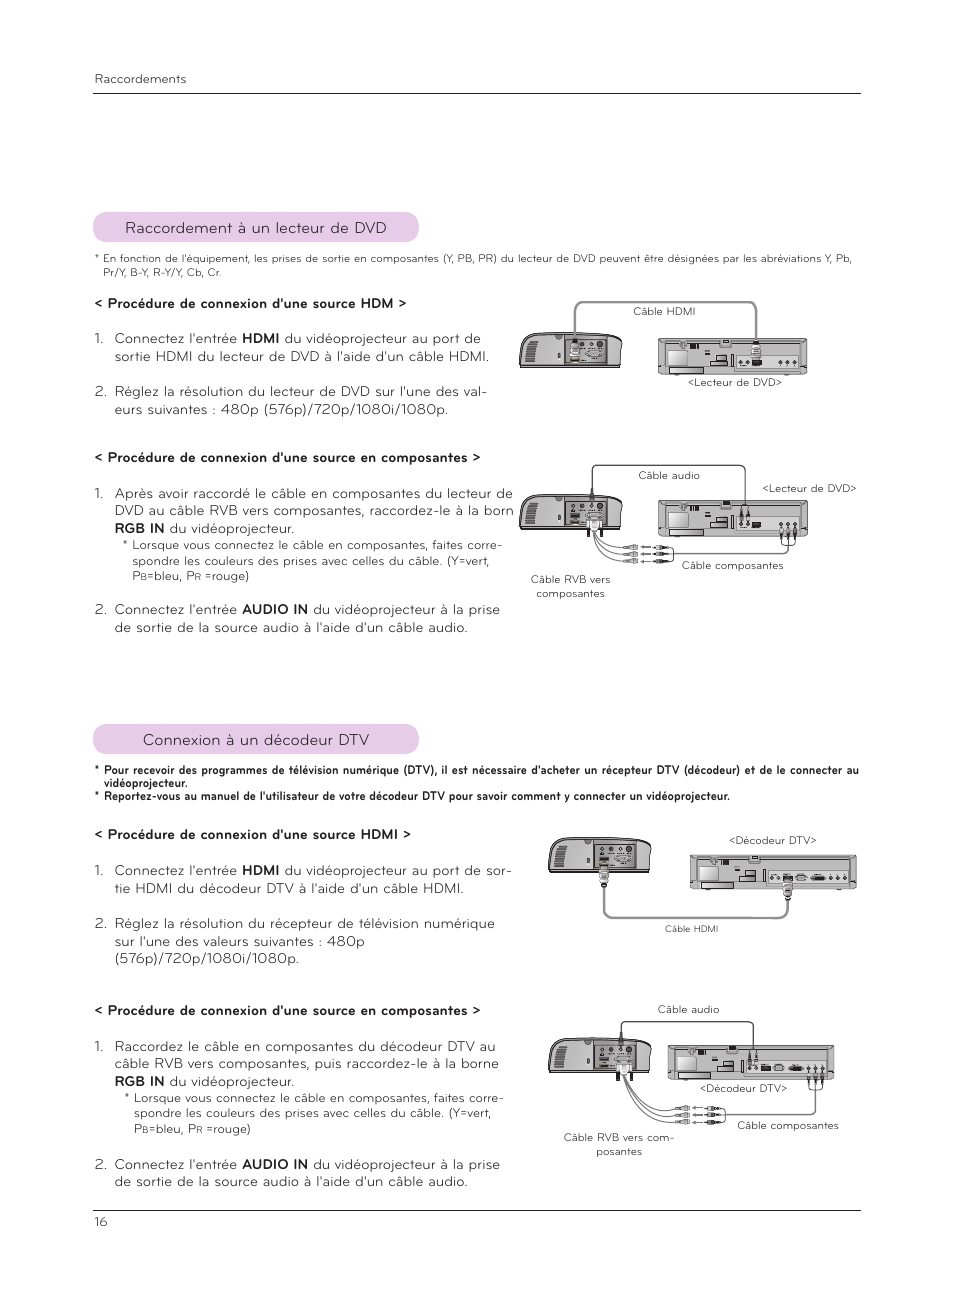 Raccordement à un lecteur de dvd, Connexion à un décodeur dtv | LG HS200G Manuel d'utilisation | Page 16 / 42